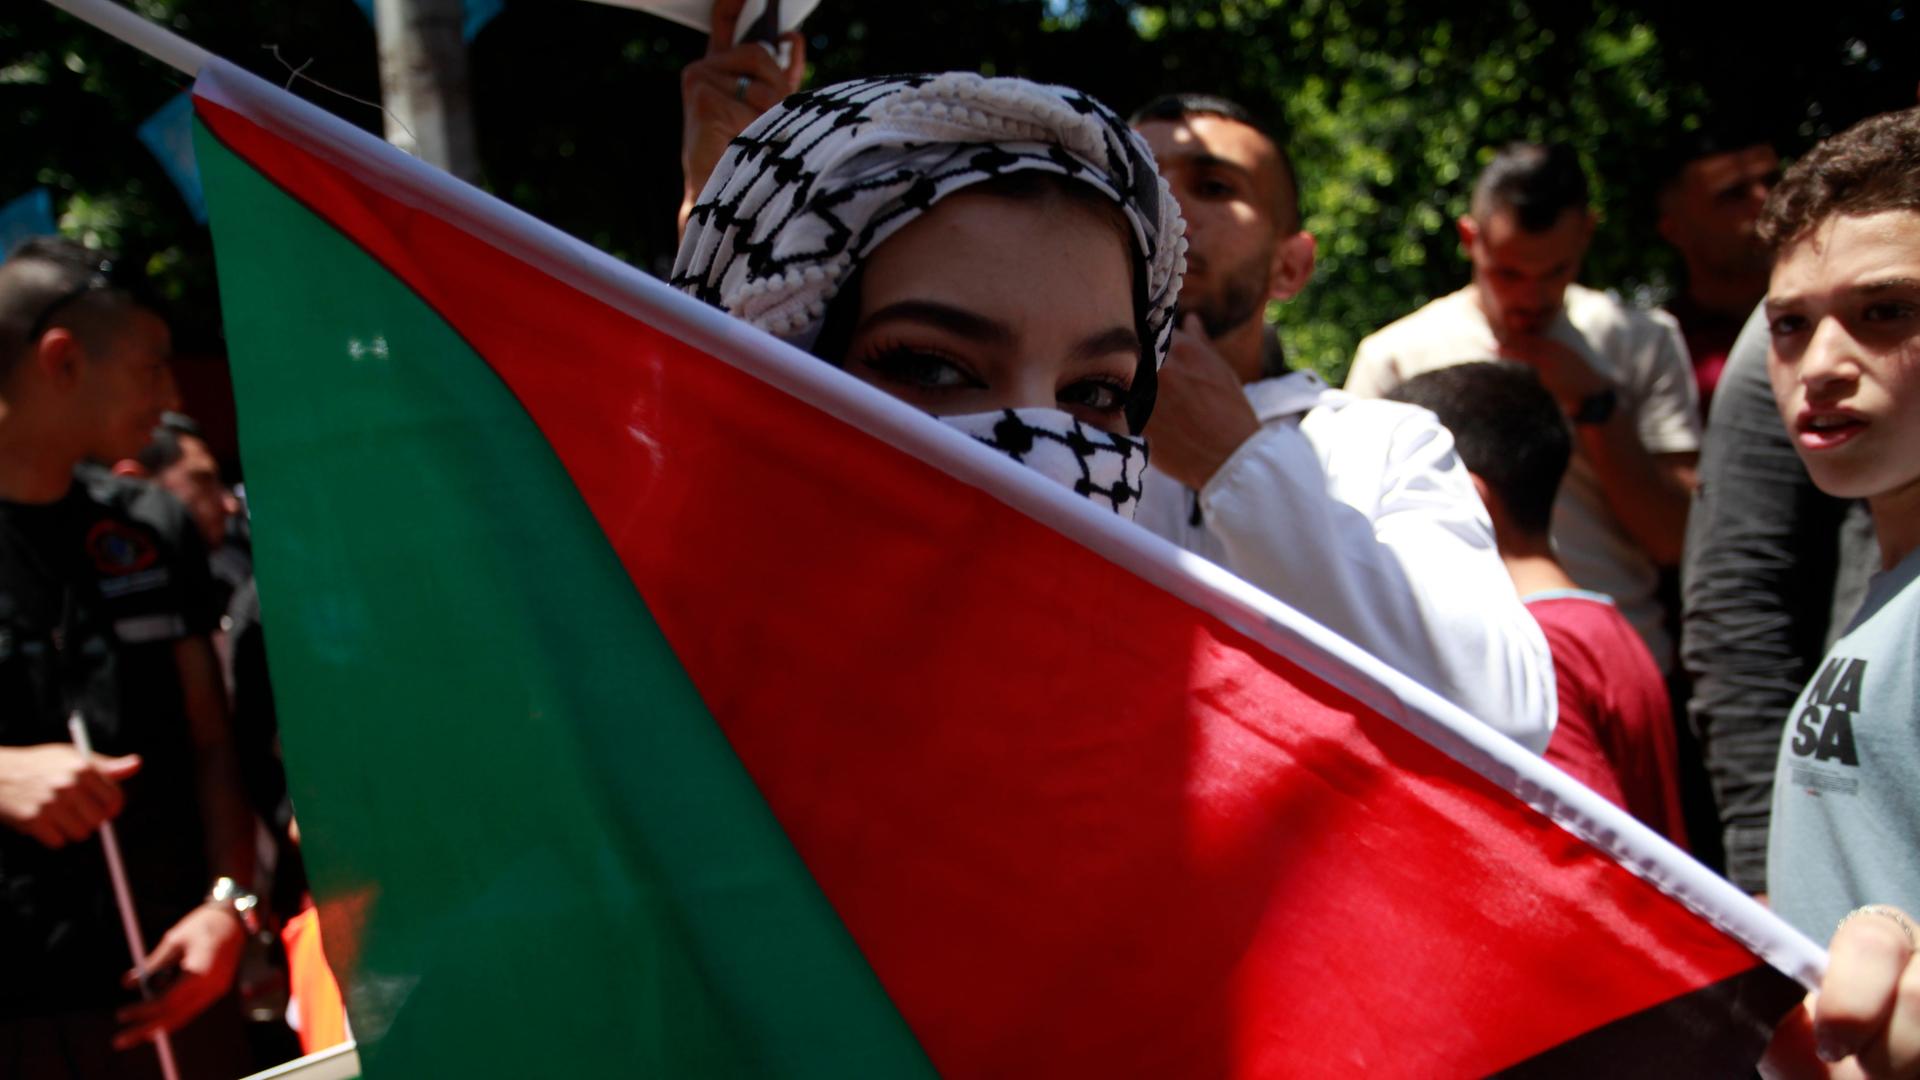 "Pro-palästinensisch" - beschreiben Medien Porteste zu einseitig?